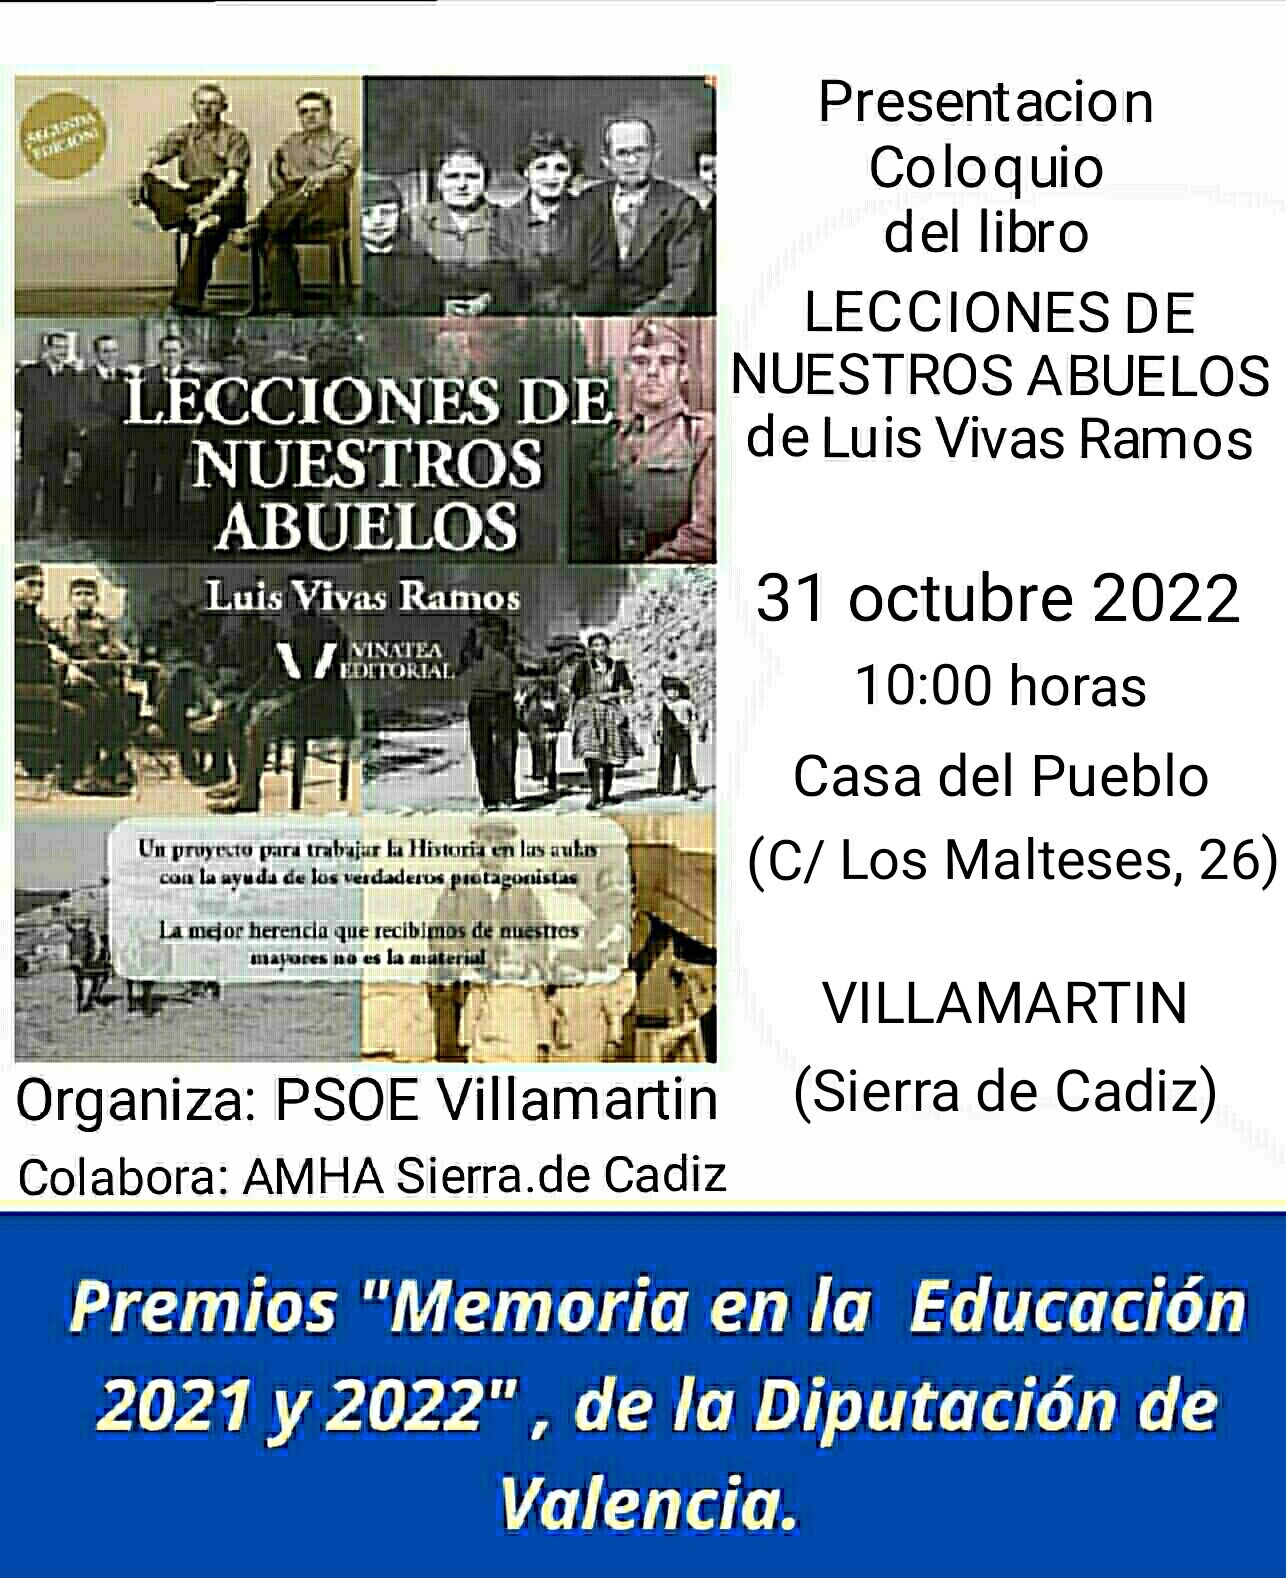 Presentación coloquio del libro Lecciones de nuestros abuelos de Luis Vivas Ramos